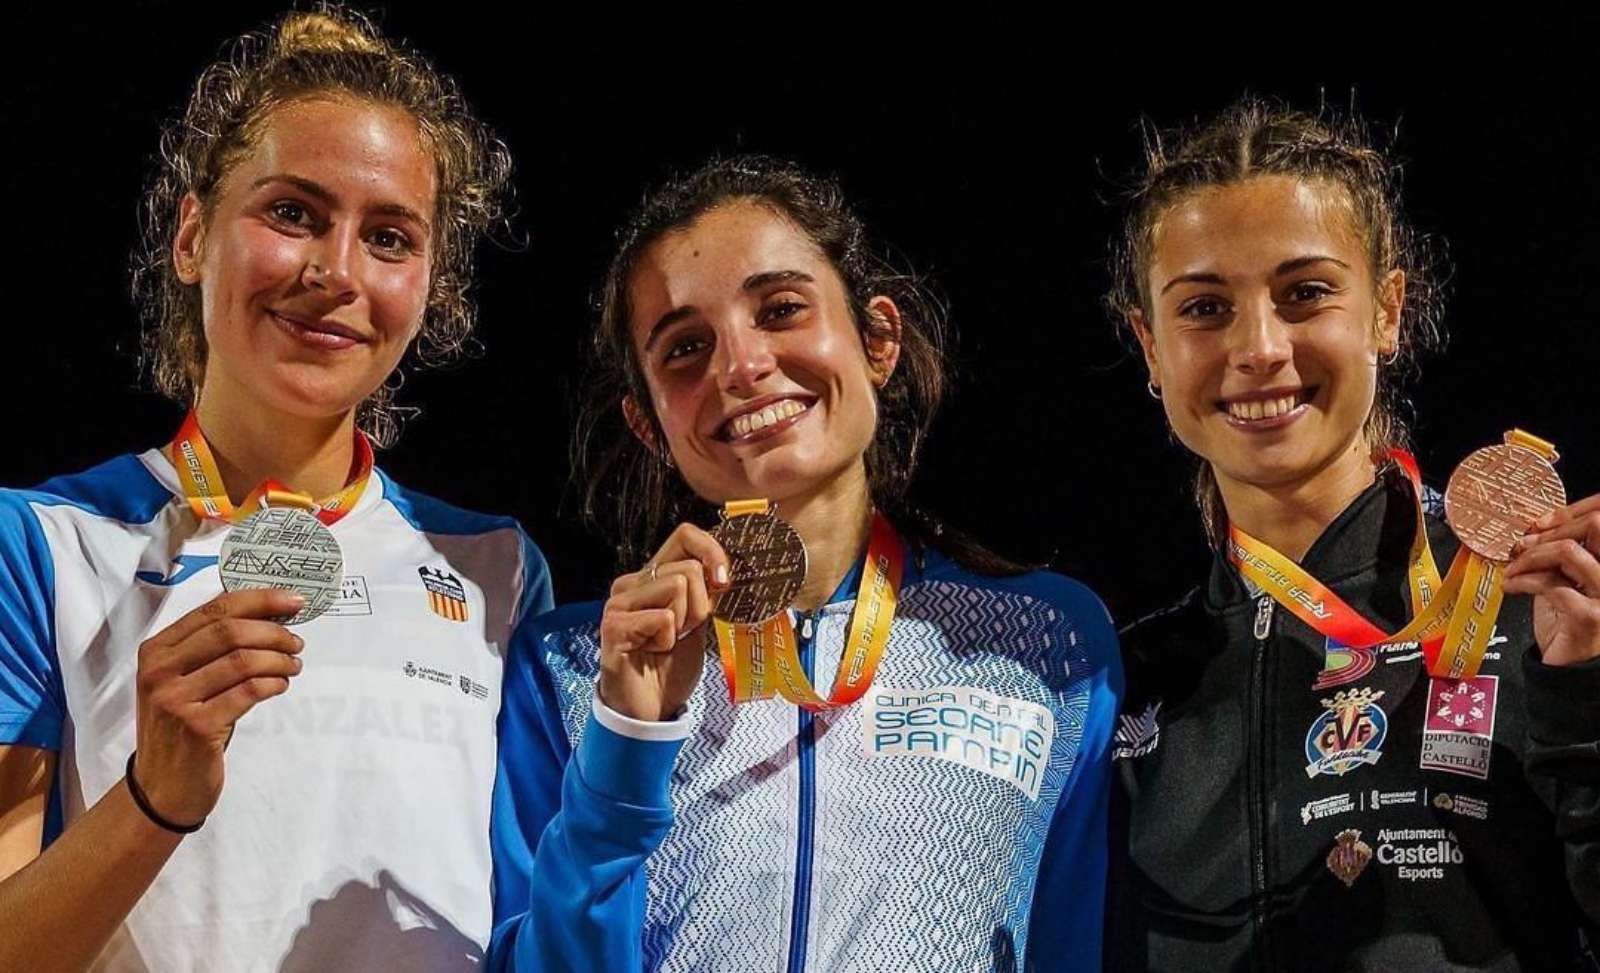 La tomellosera Alicia Berzosa, campeona de España Sub 23 de 10.000 metros